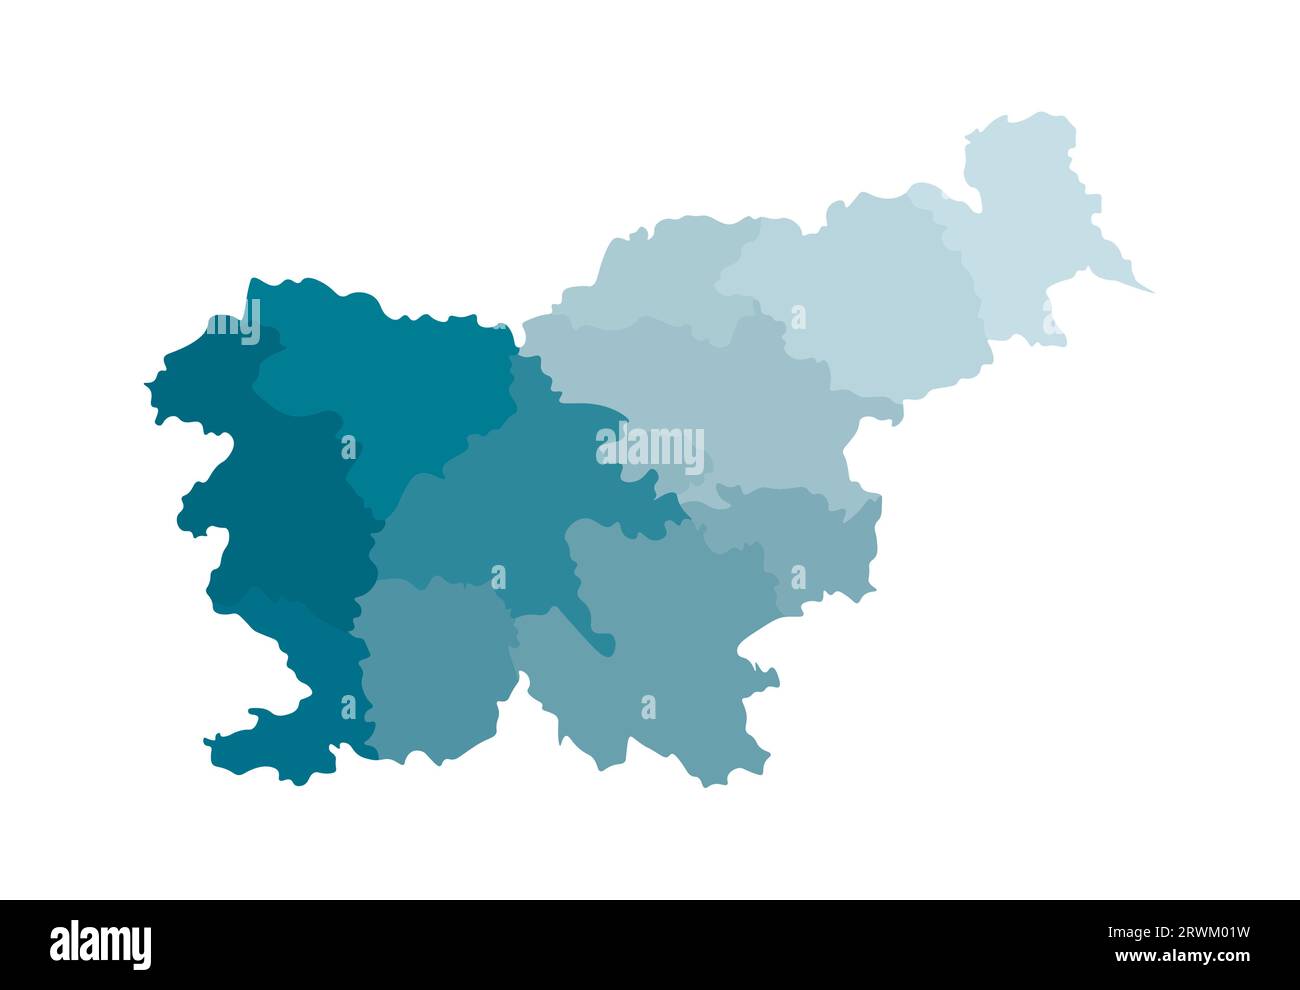 Vektorisolierte Darstellung der vereinfachten Verwaltungskarte Sloweniens. Grenzen der Regionen. Farbenfrohe, khakifarbene Silhouetten. Stock Vektor